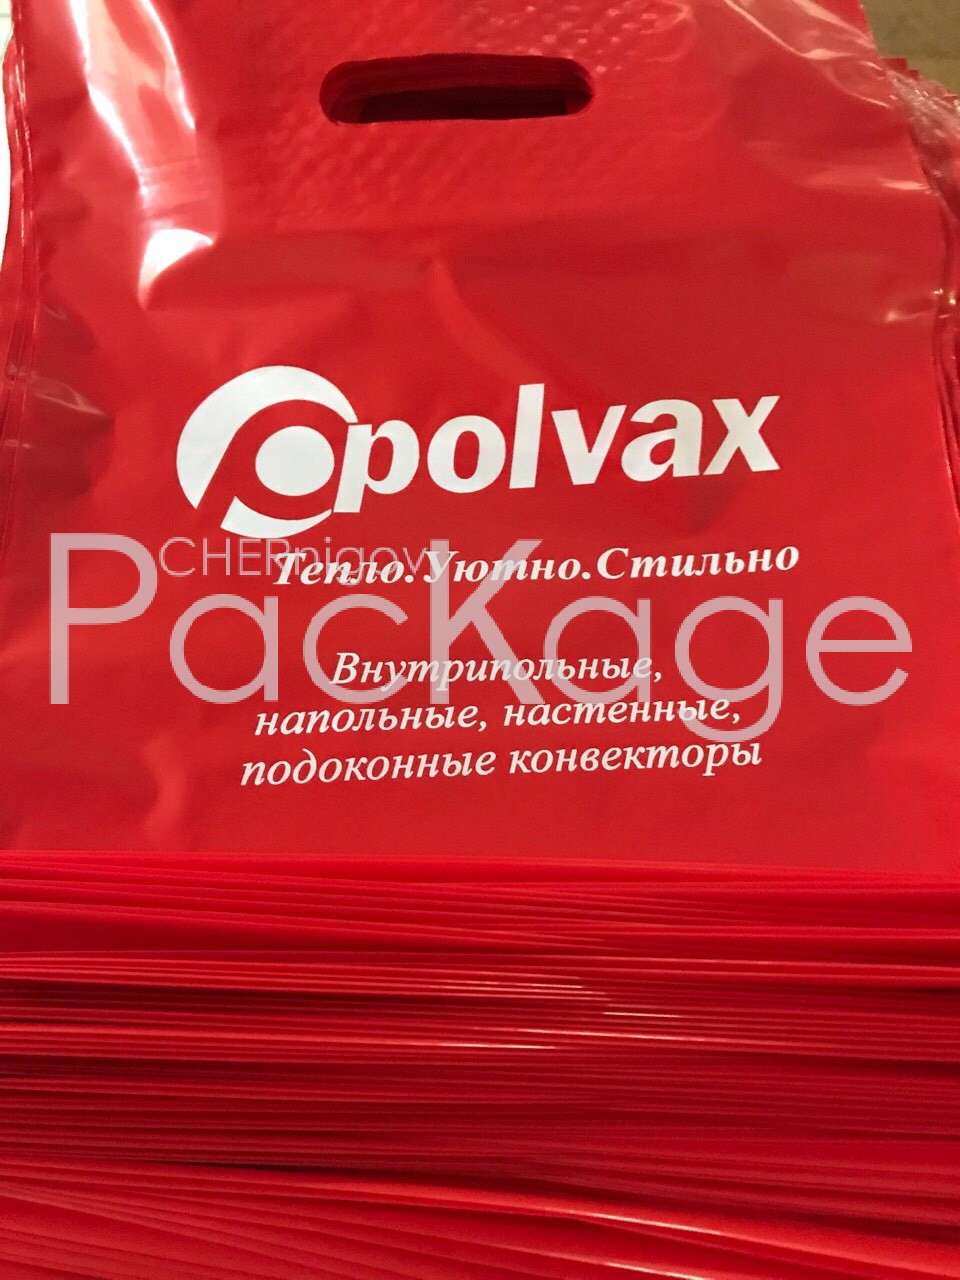 Как заказать пакеты банан в Киеве Chernigov Package - Фото image_6483441-8